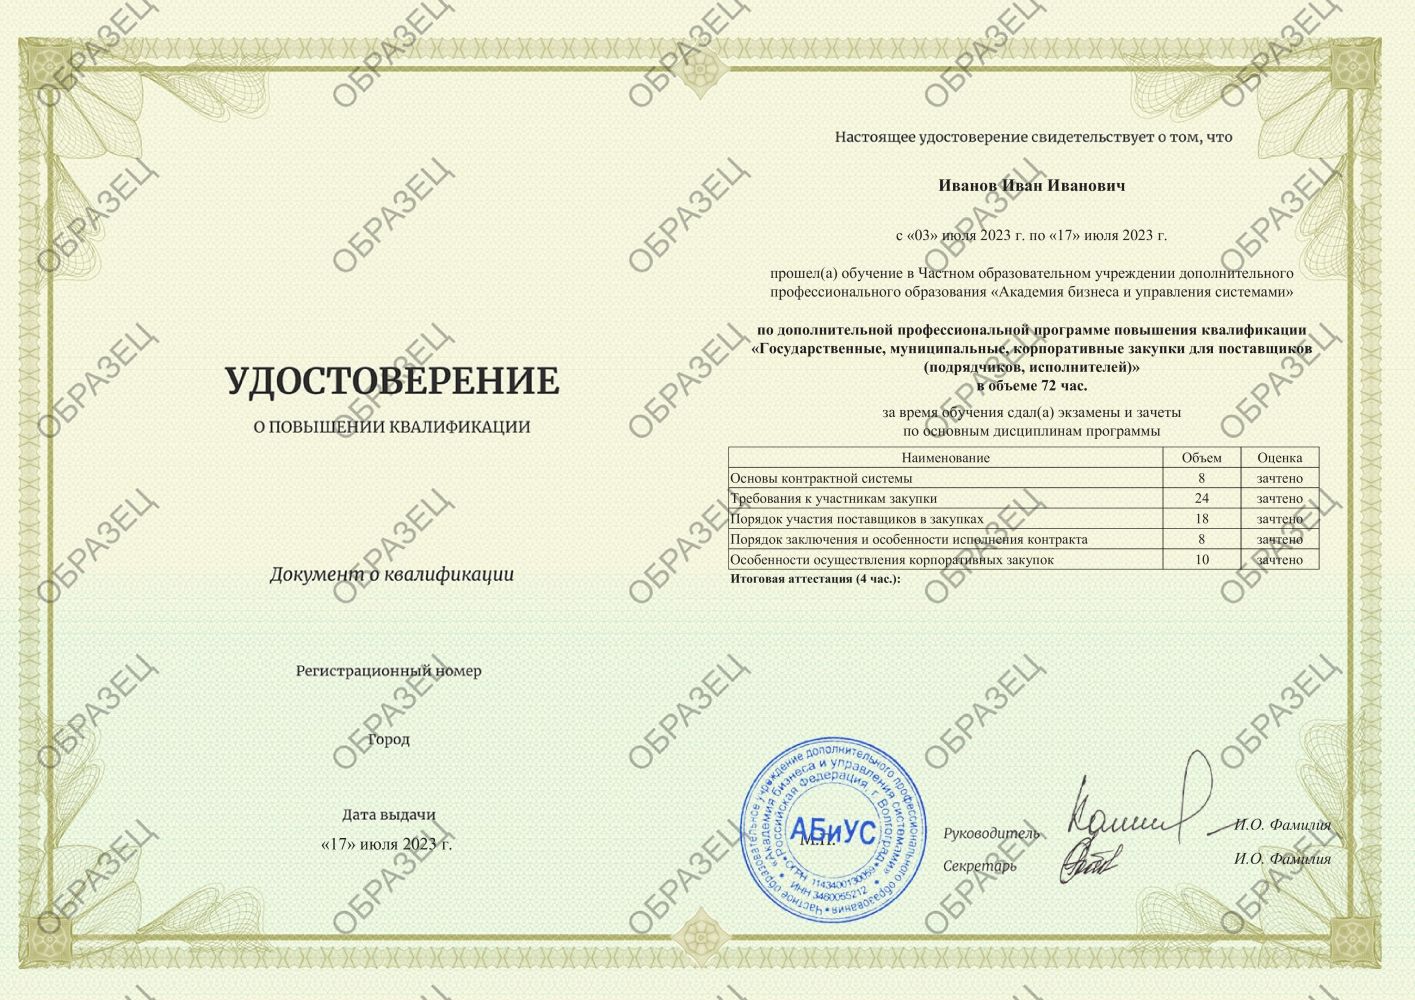 Удостоверение Государственные, муниципальные, корпоративные закупки для поставщиков (подрядчиков, исполнителей) 72 часа 6563 руб.